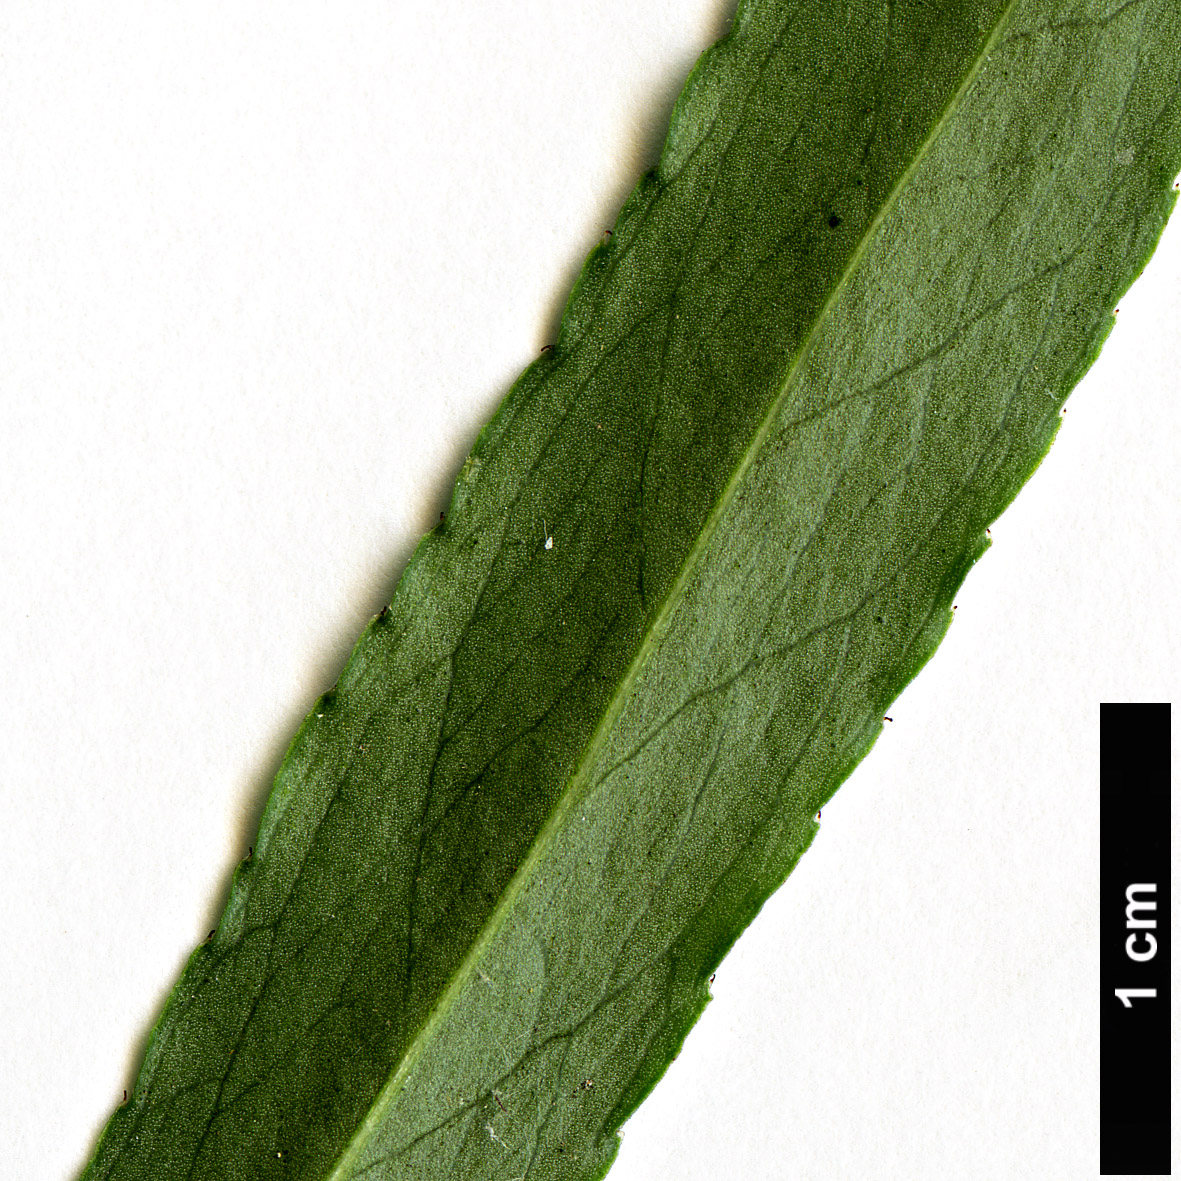 High resolution image: Family: Celastraceae - Genus: Euonymus - Taxon: cornutus - SpeciesSub: var. quinquecornutus